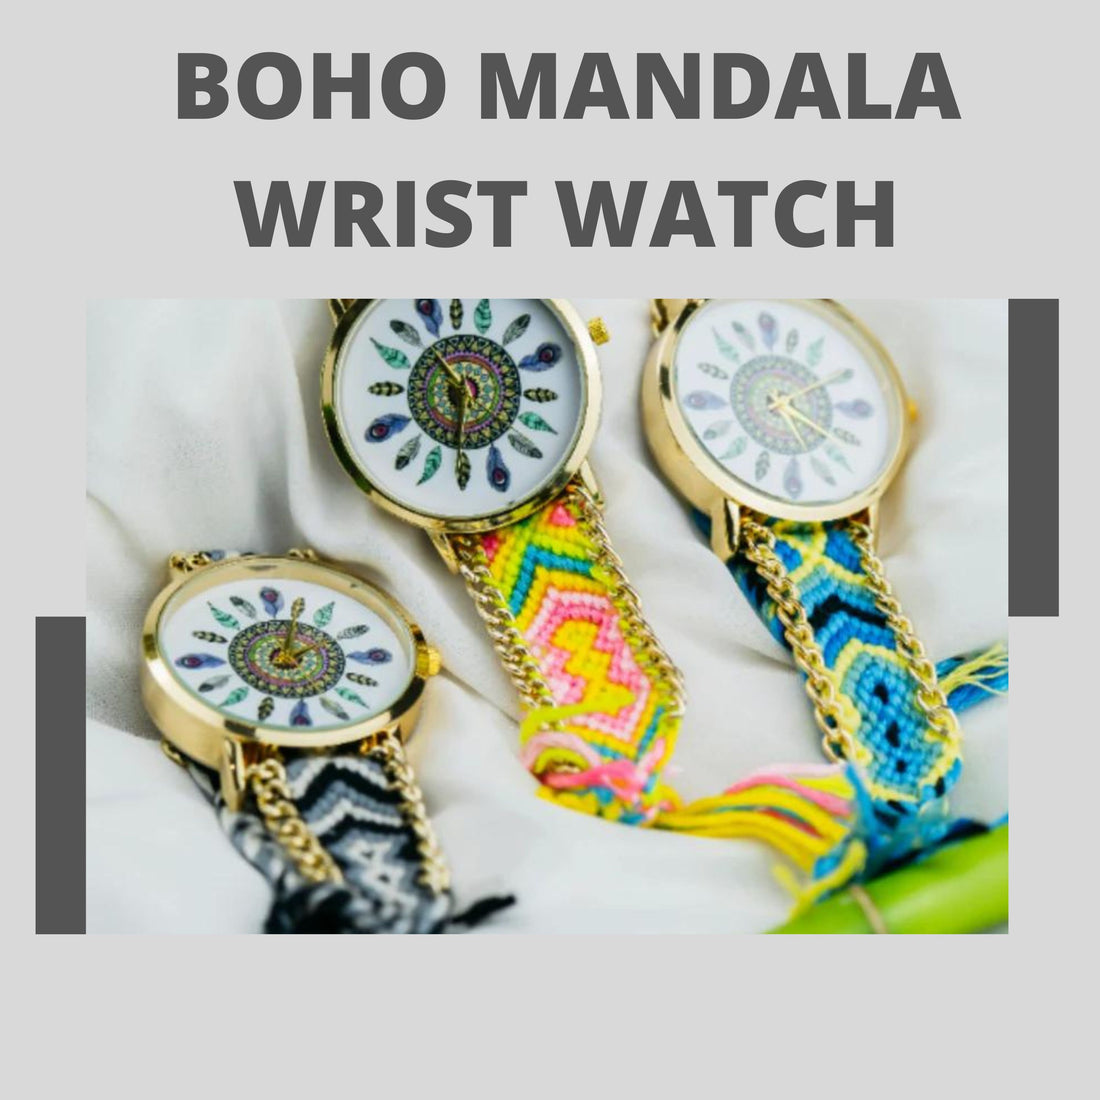 Boho Mandala Wrist Watch